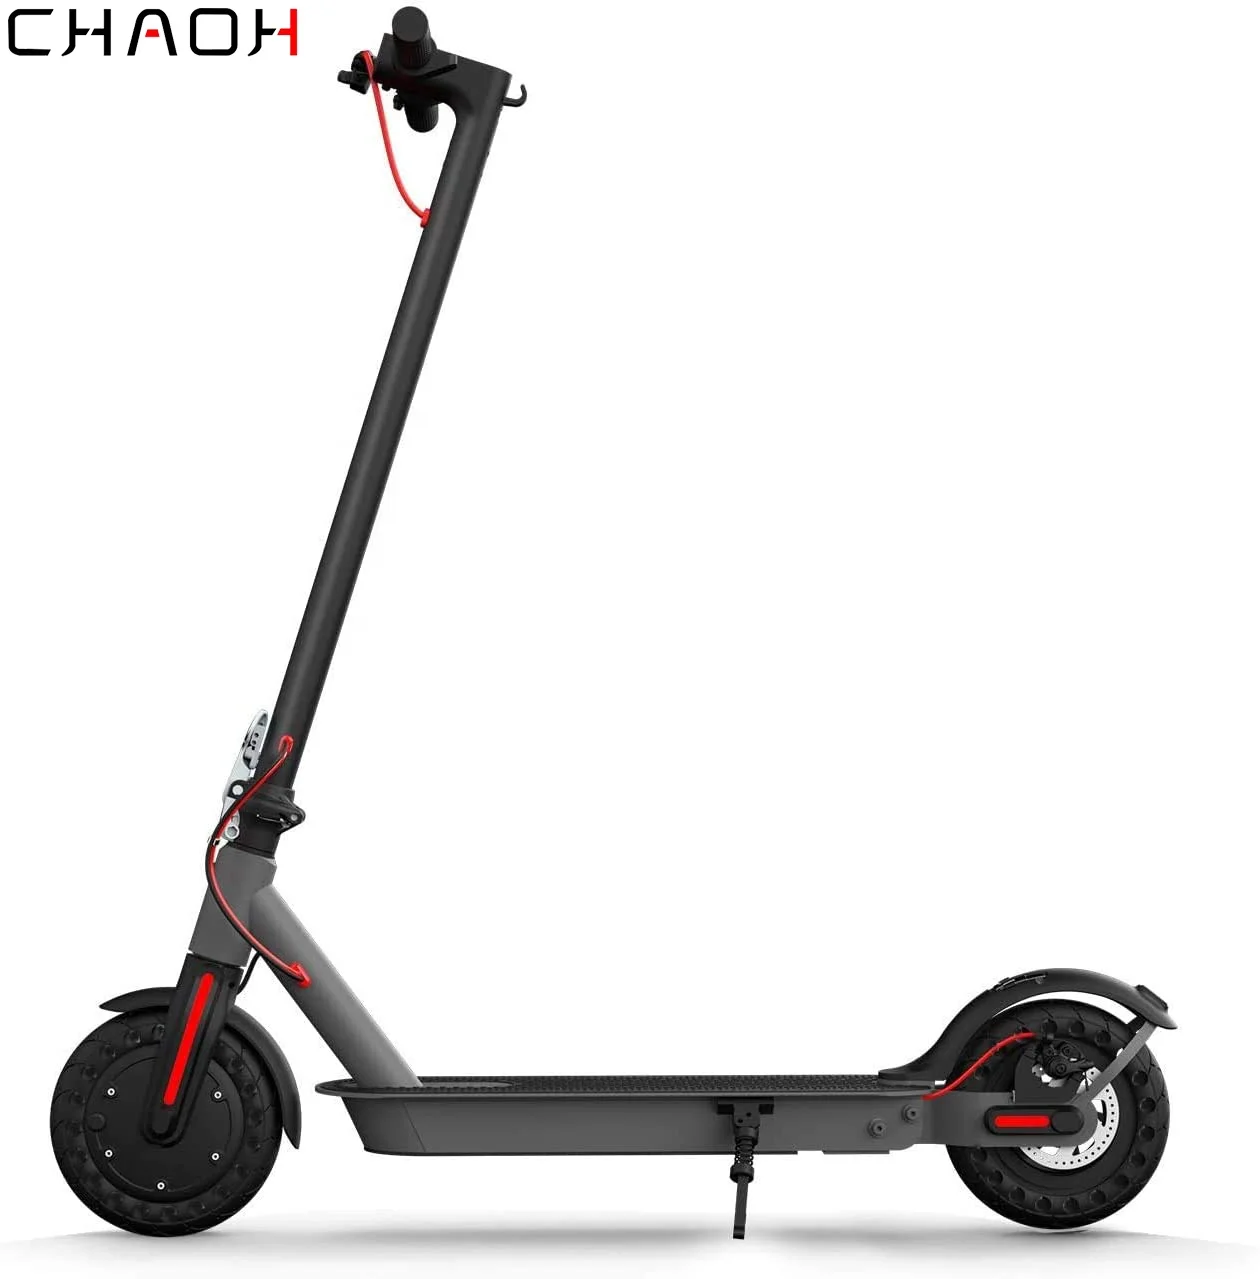 

ChaoH m365 electric scooter elektricky skuter elektryczny m365 32km/h silnik 350W opony antyposlizgowe i ekran LCD, wodoszczelny